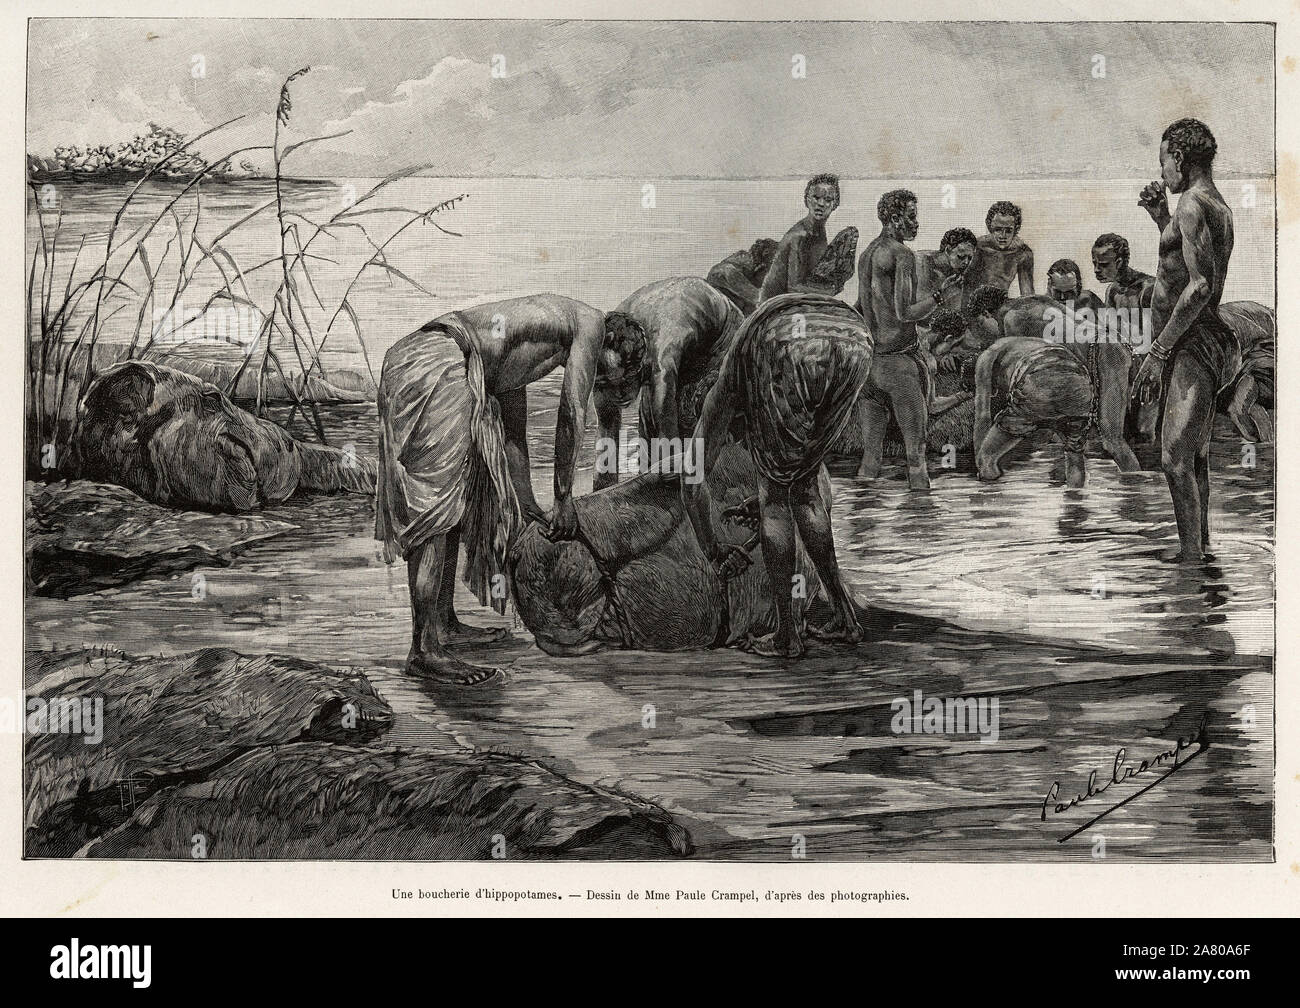 Une boucherie d'hippopotames sur les rives d'un fleuve d'Afrique centrale. Gravure de Henri Thiriat pour illustrer le recit 'La mission Crampel', par Stock Photo